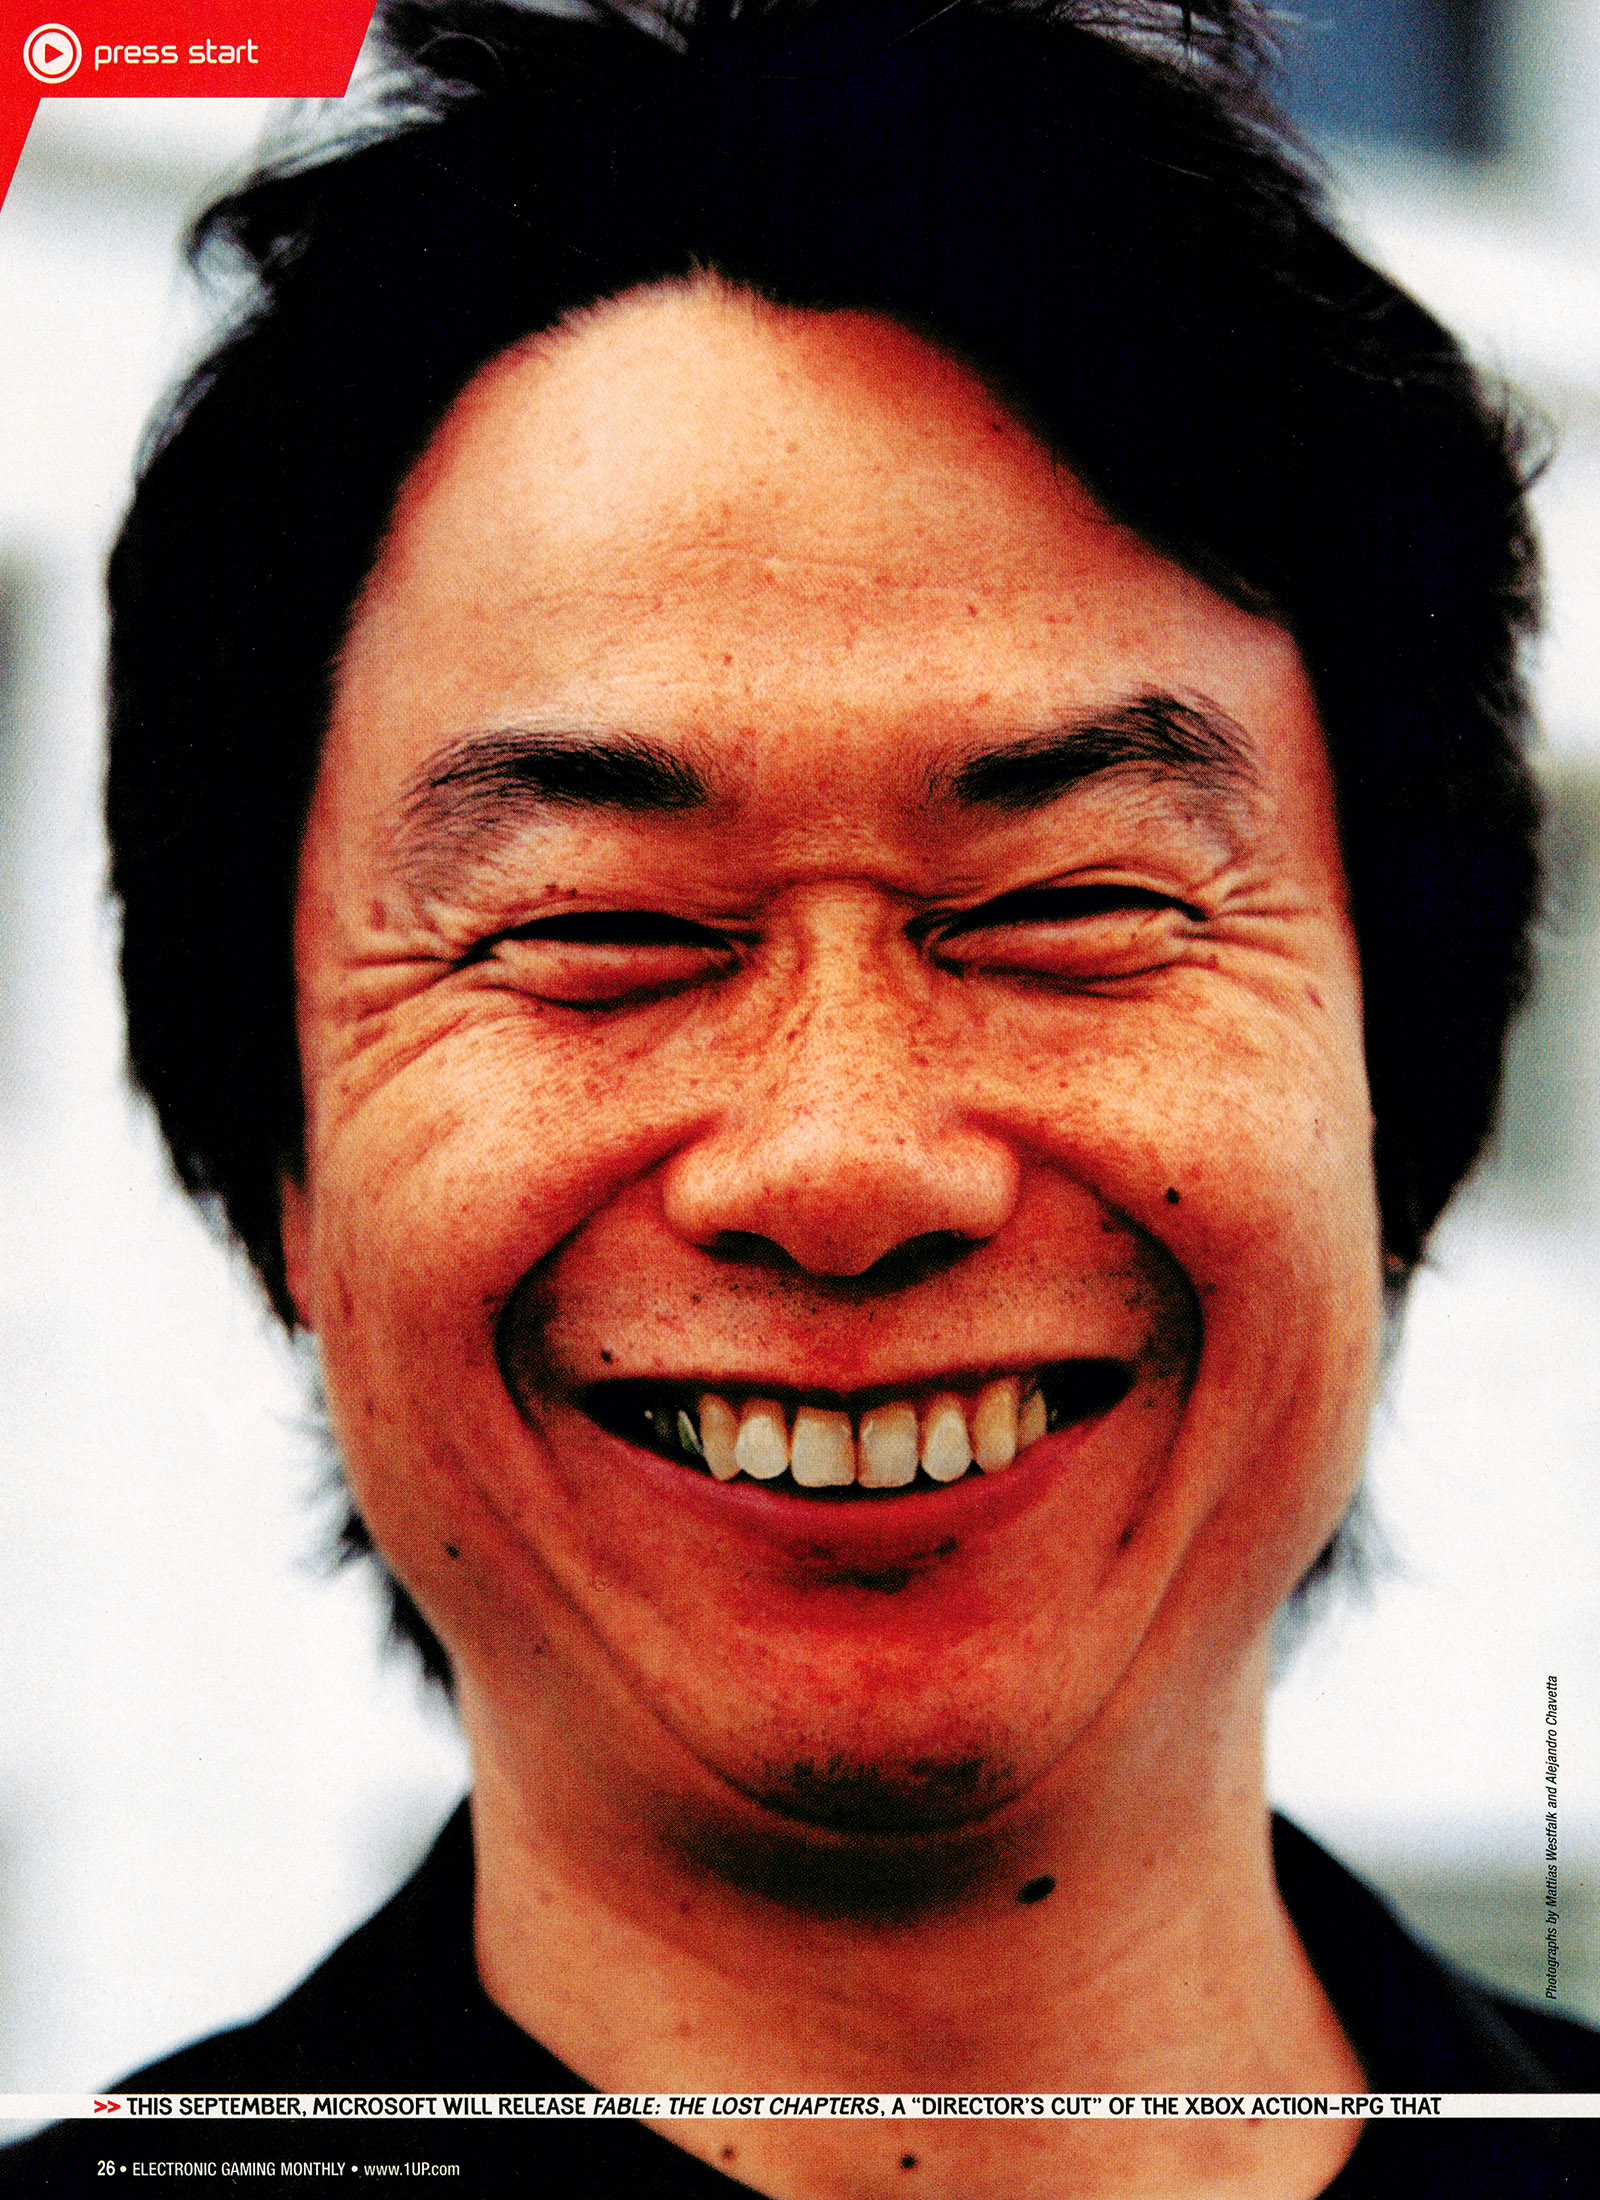 Shigeru Miyamoto Won't be Retiring Anytime Soon